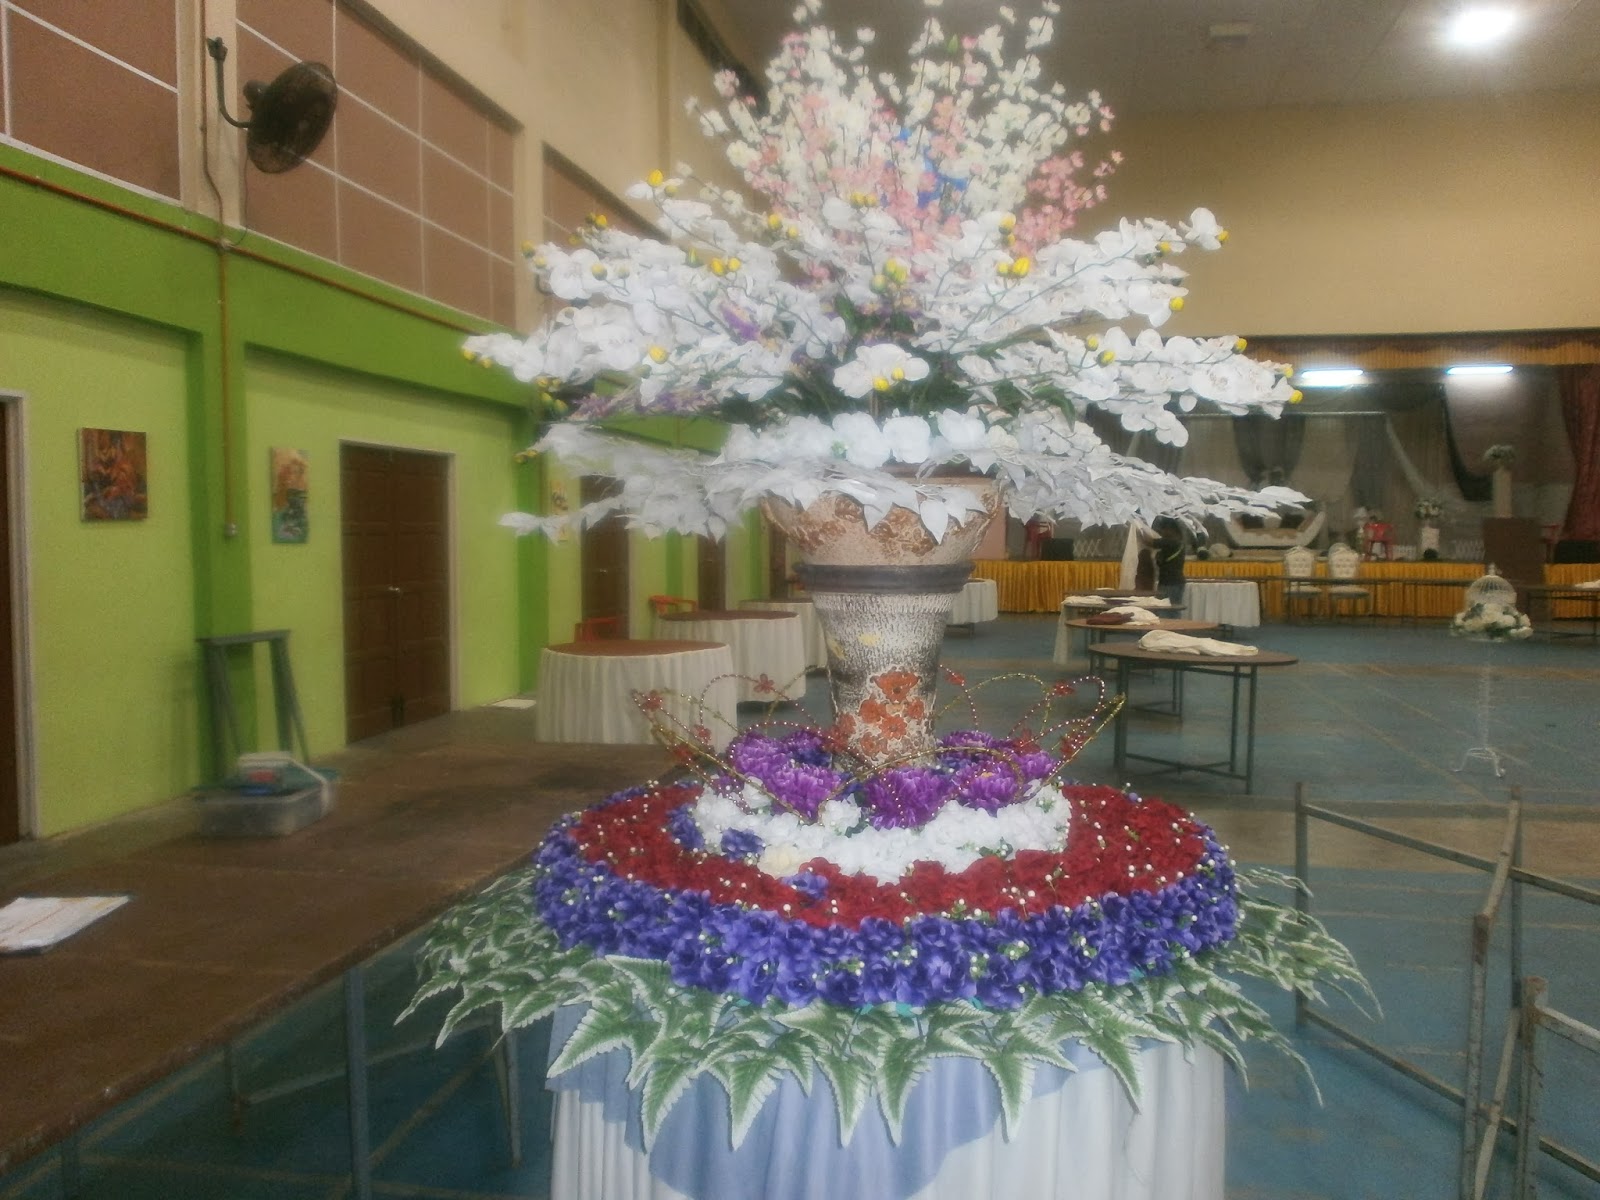  Dekorasi  Lelangit Muar Johor dekorasi  gubahan bunga di 